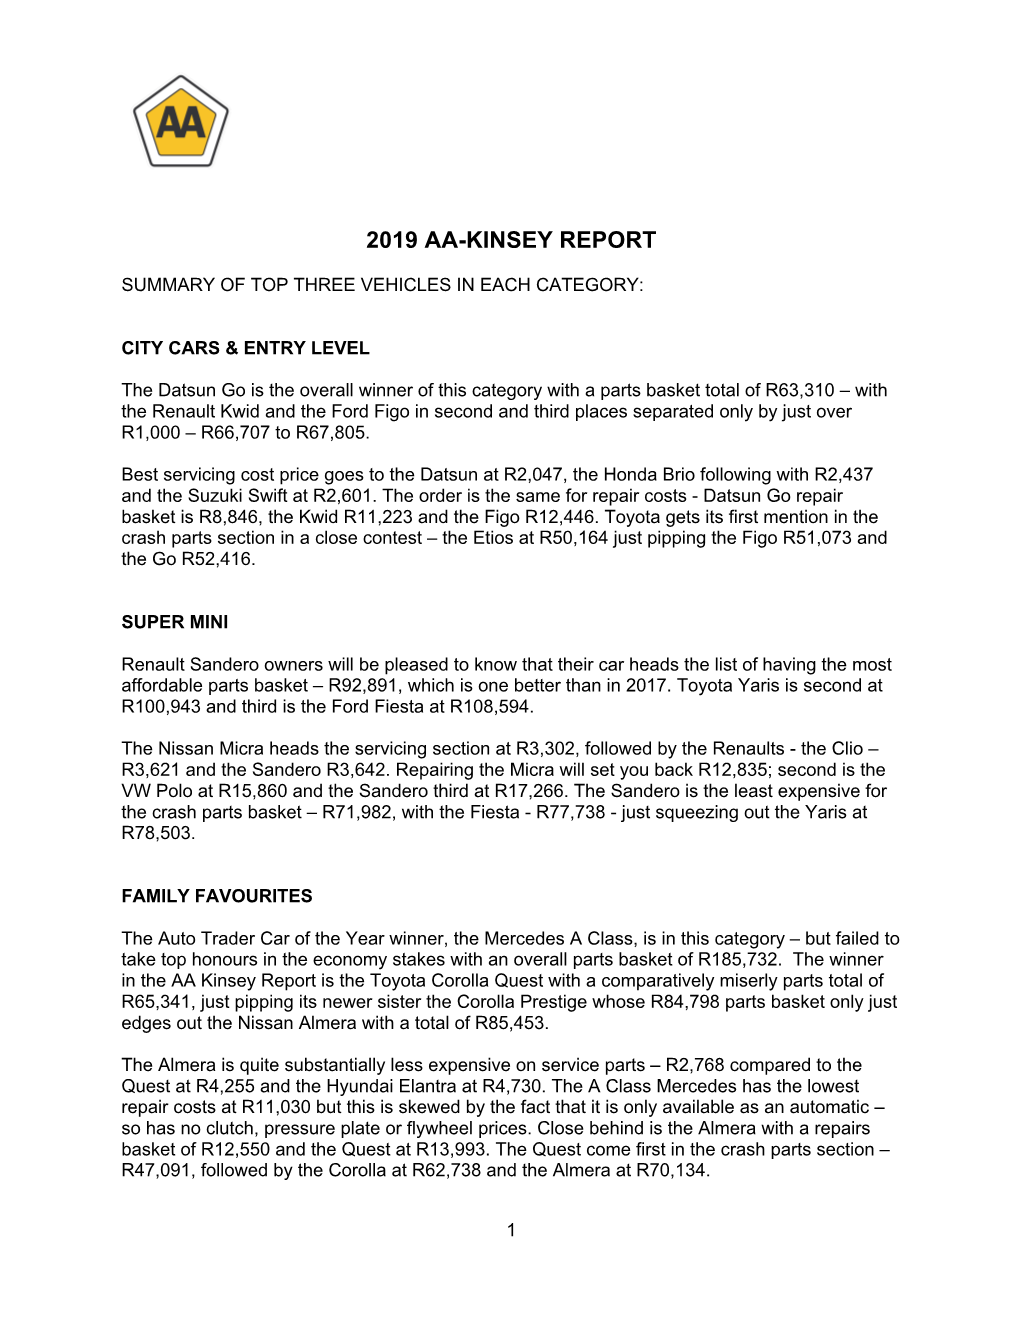 2019 Aa-Kinsey Report